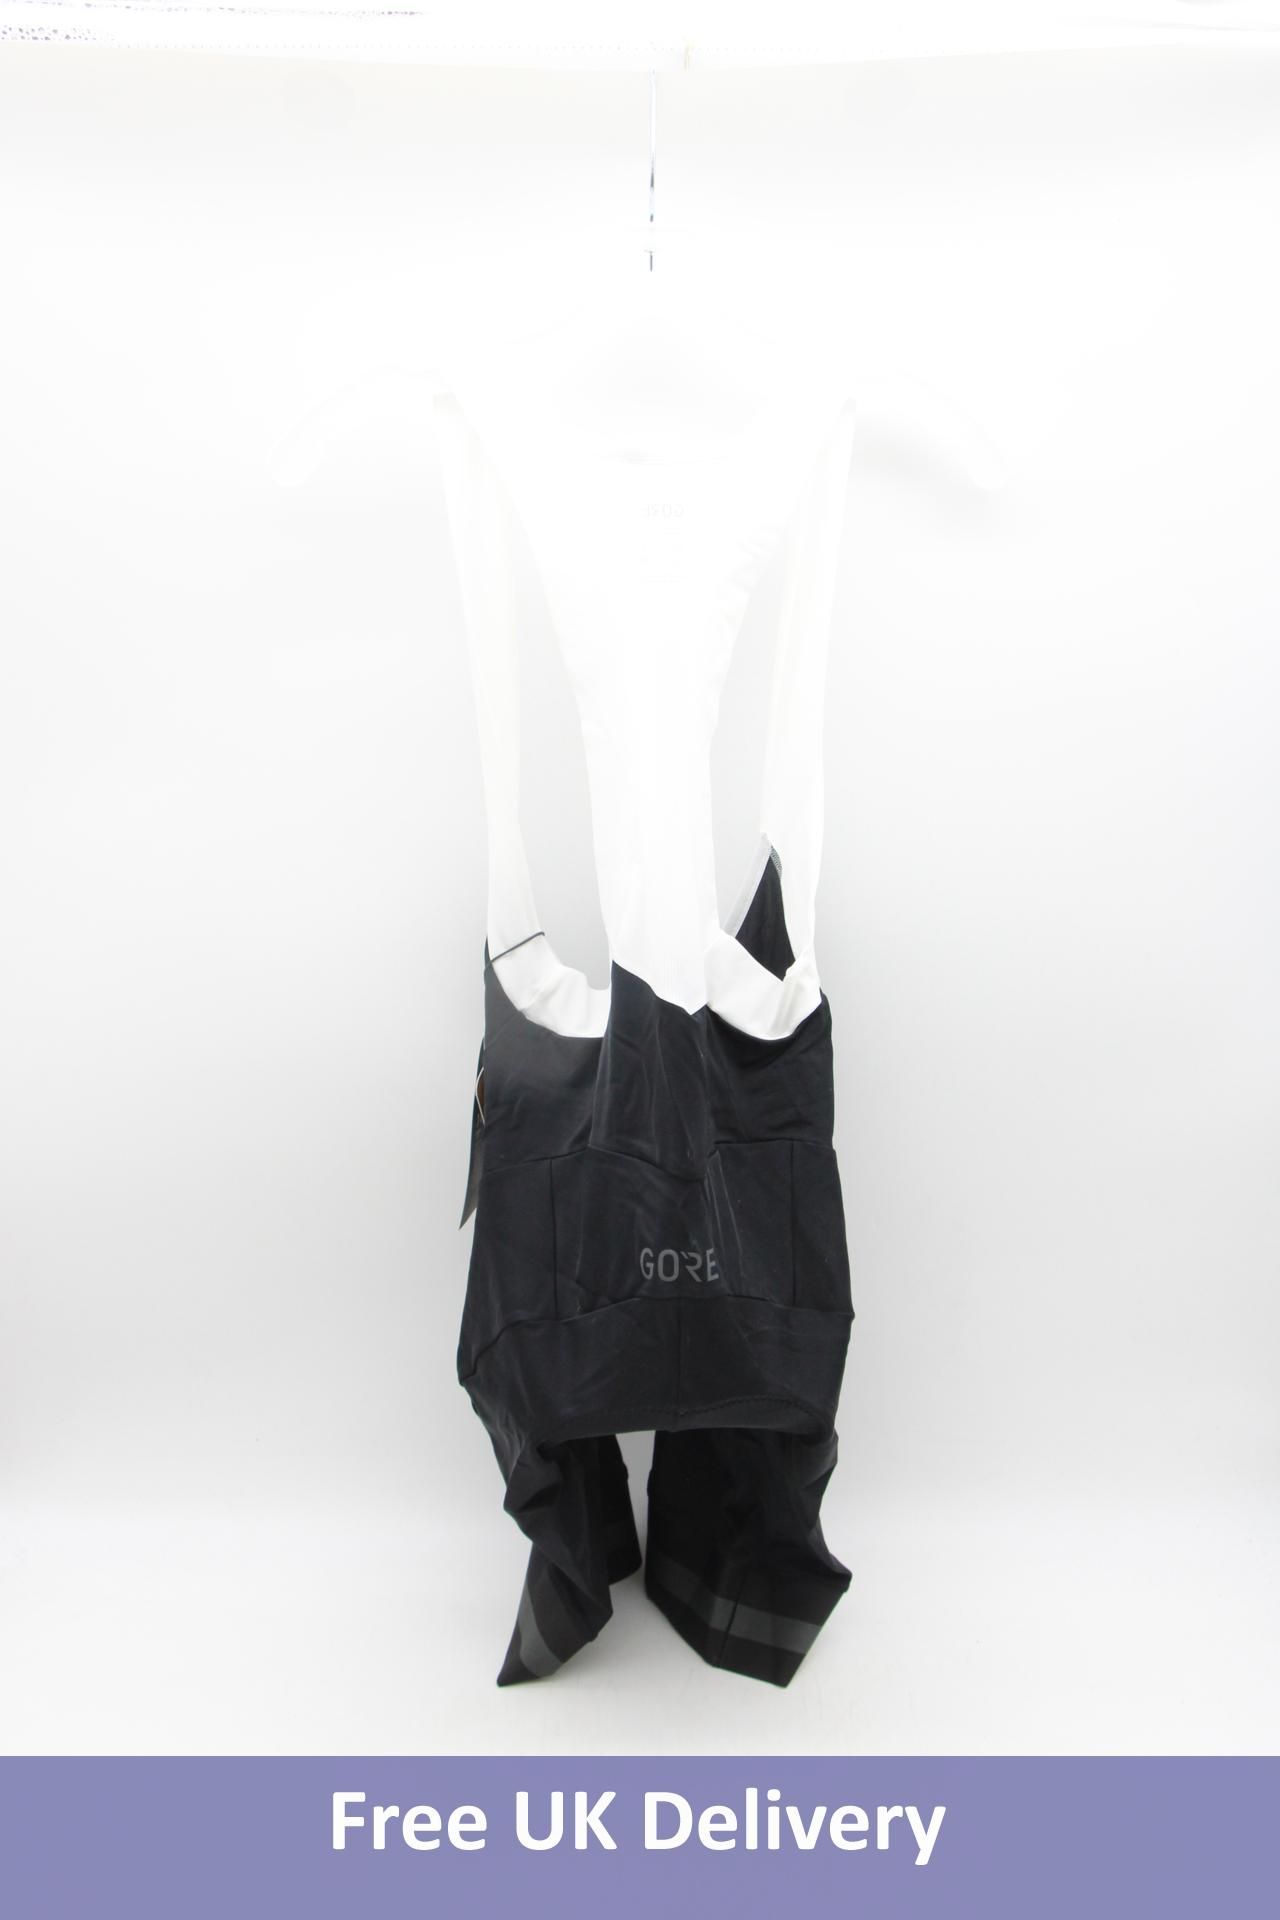 Gore Torrent Bib Shorts, Black, EU L